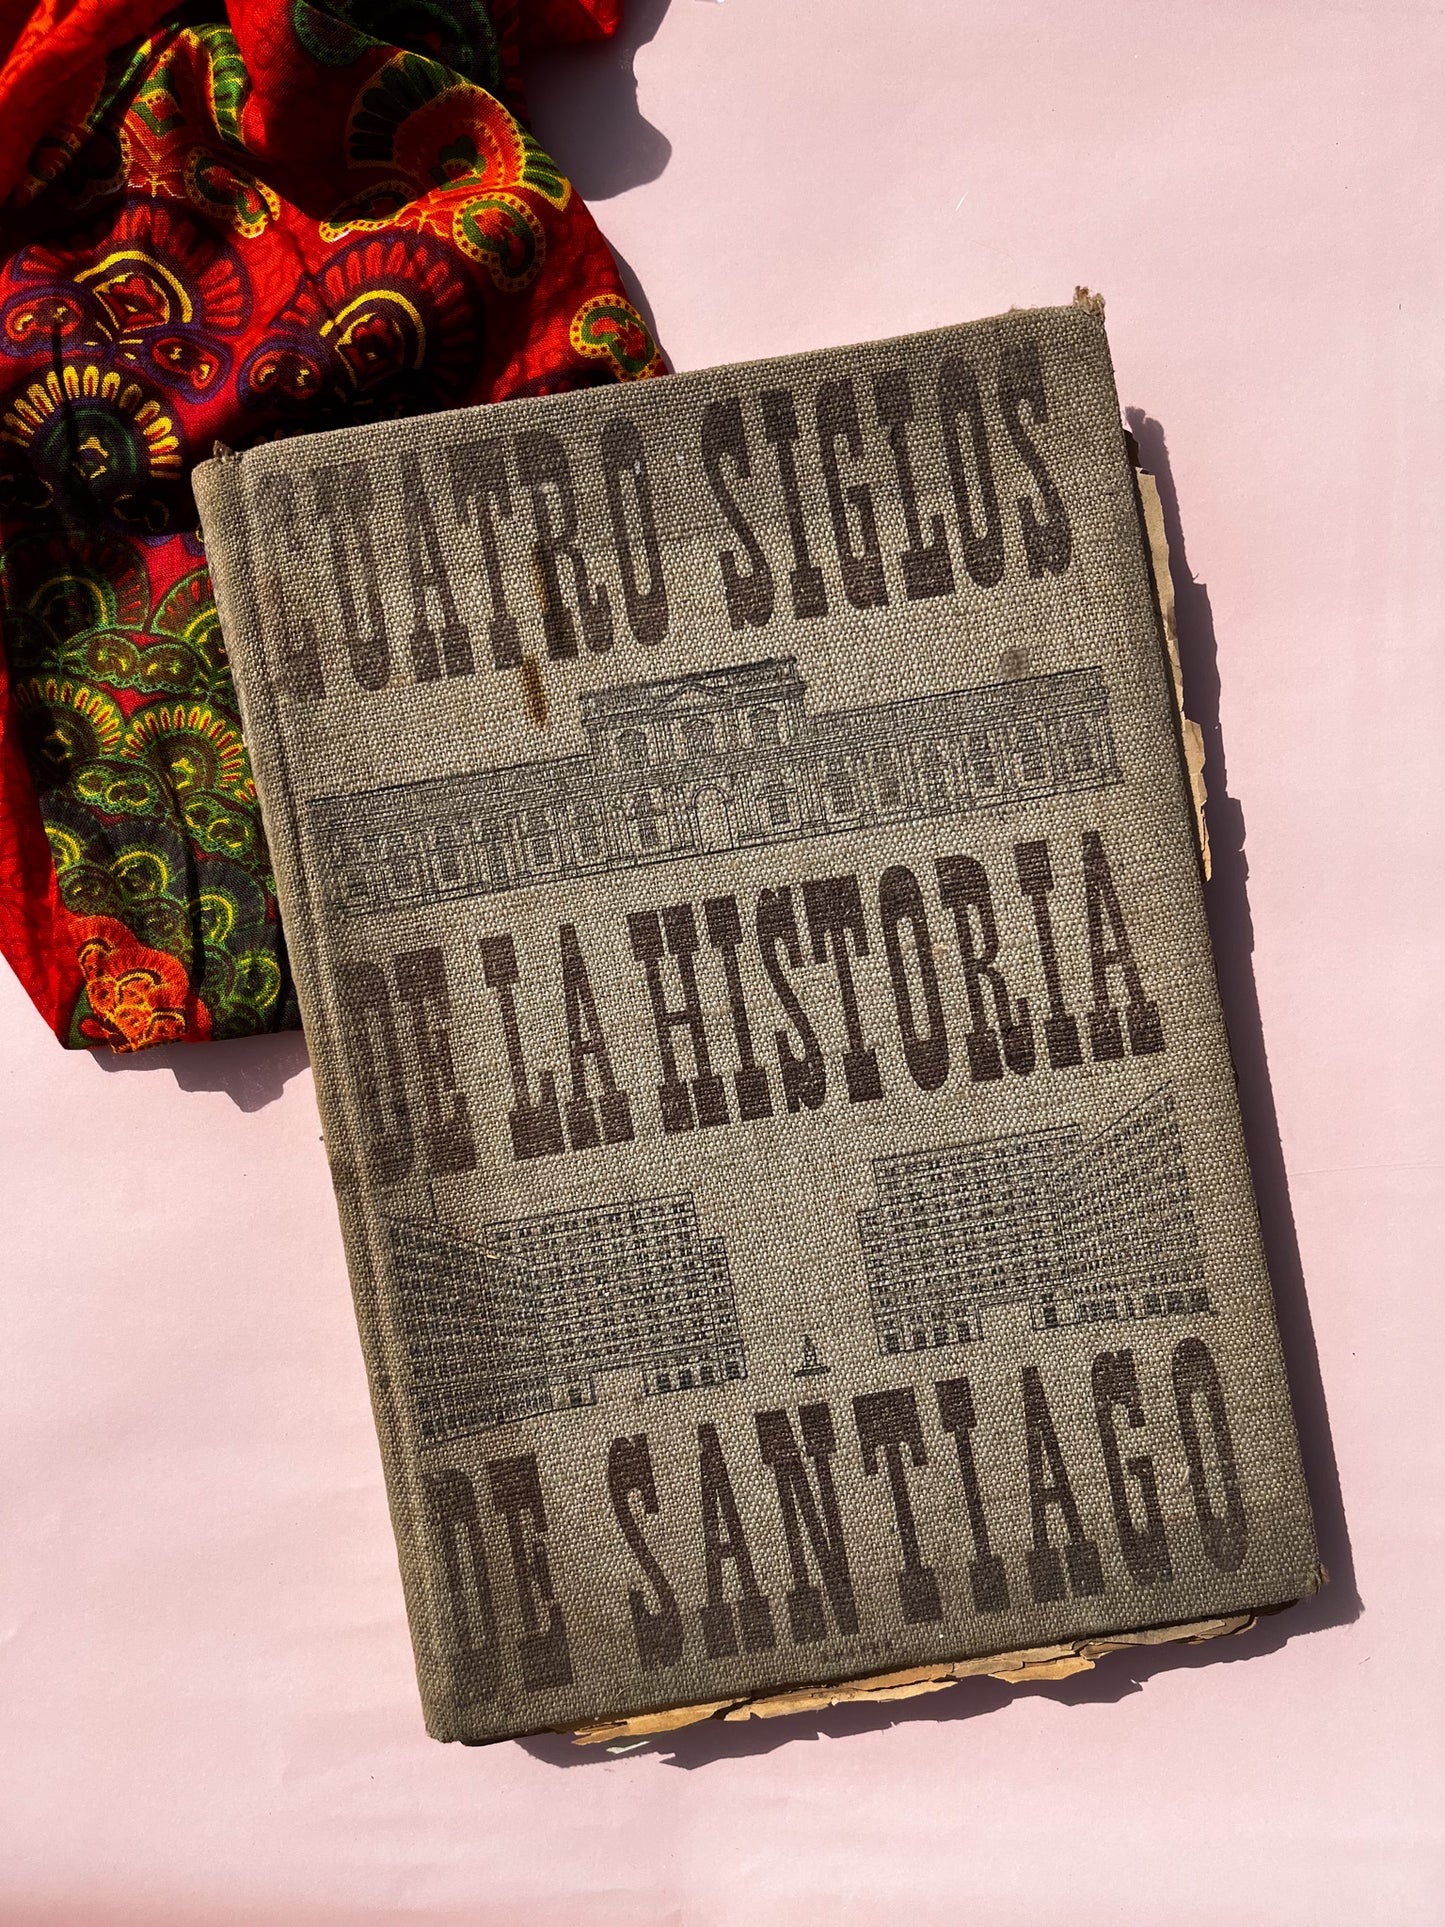 2 Libros sobre la historia de Santiago